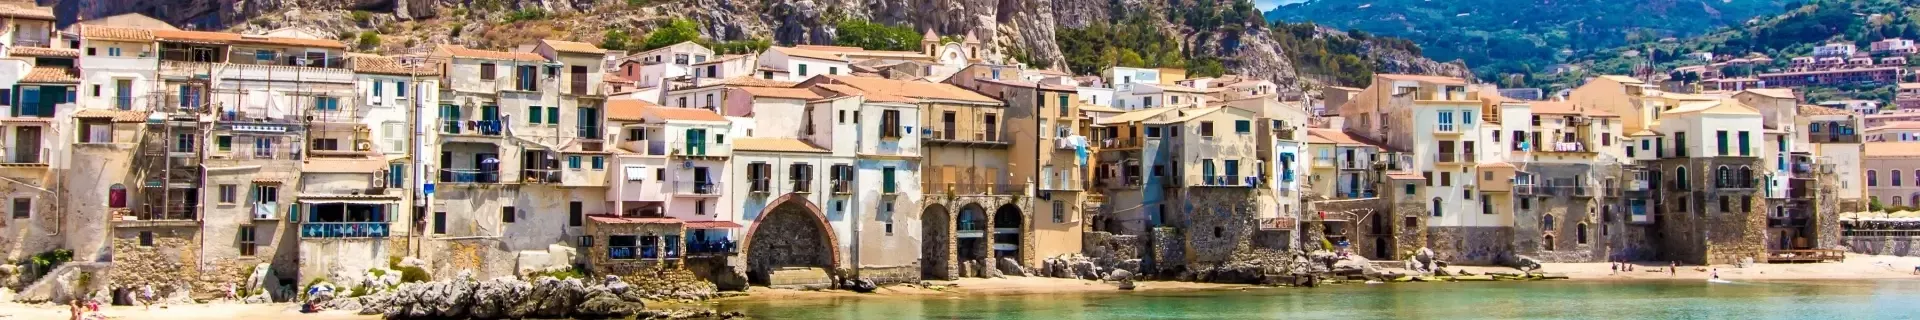 Italië Sicilië Cefalú